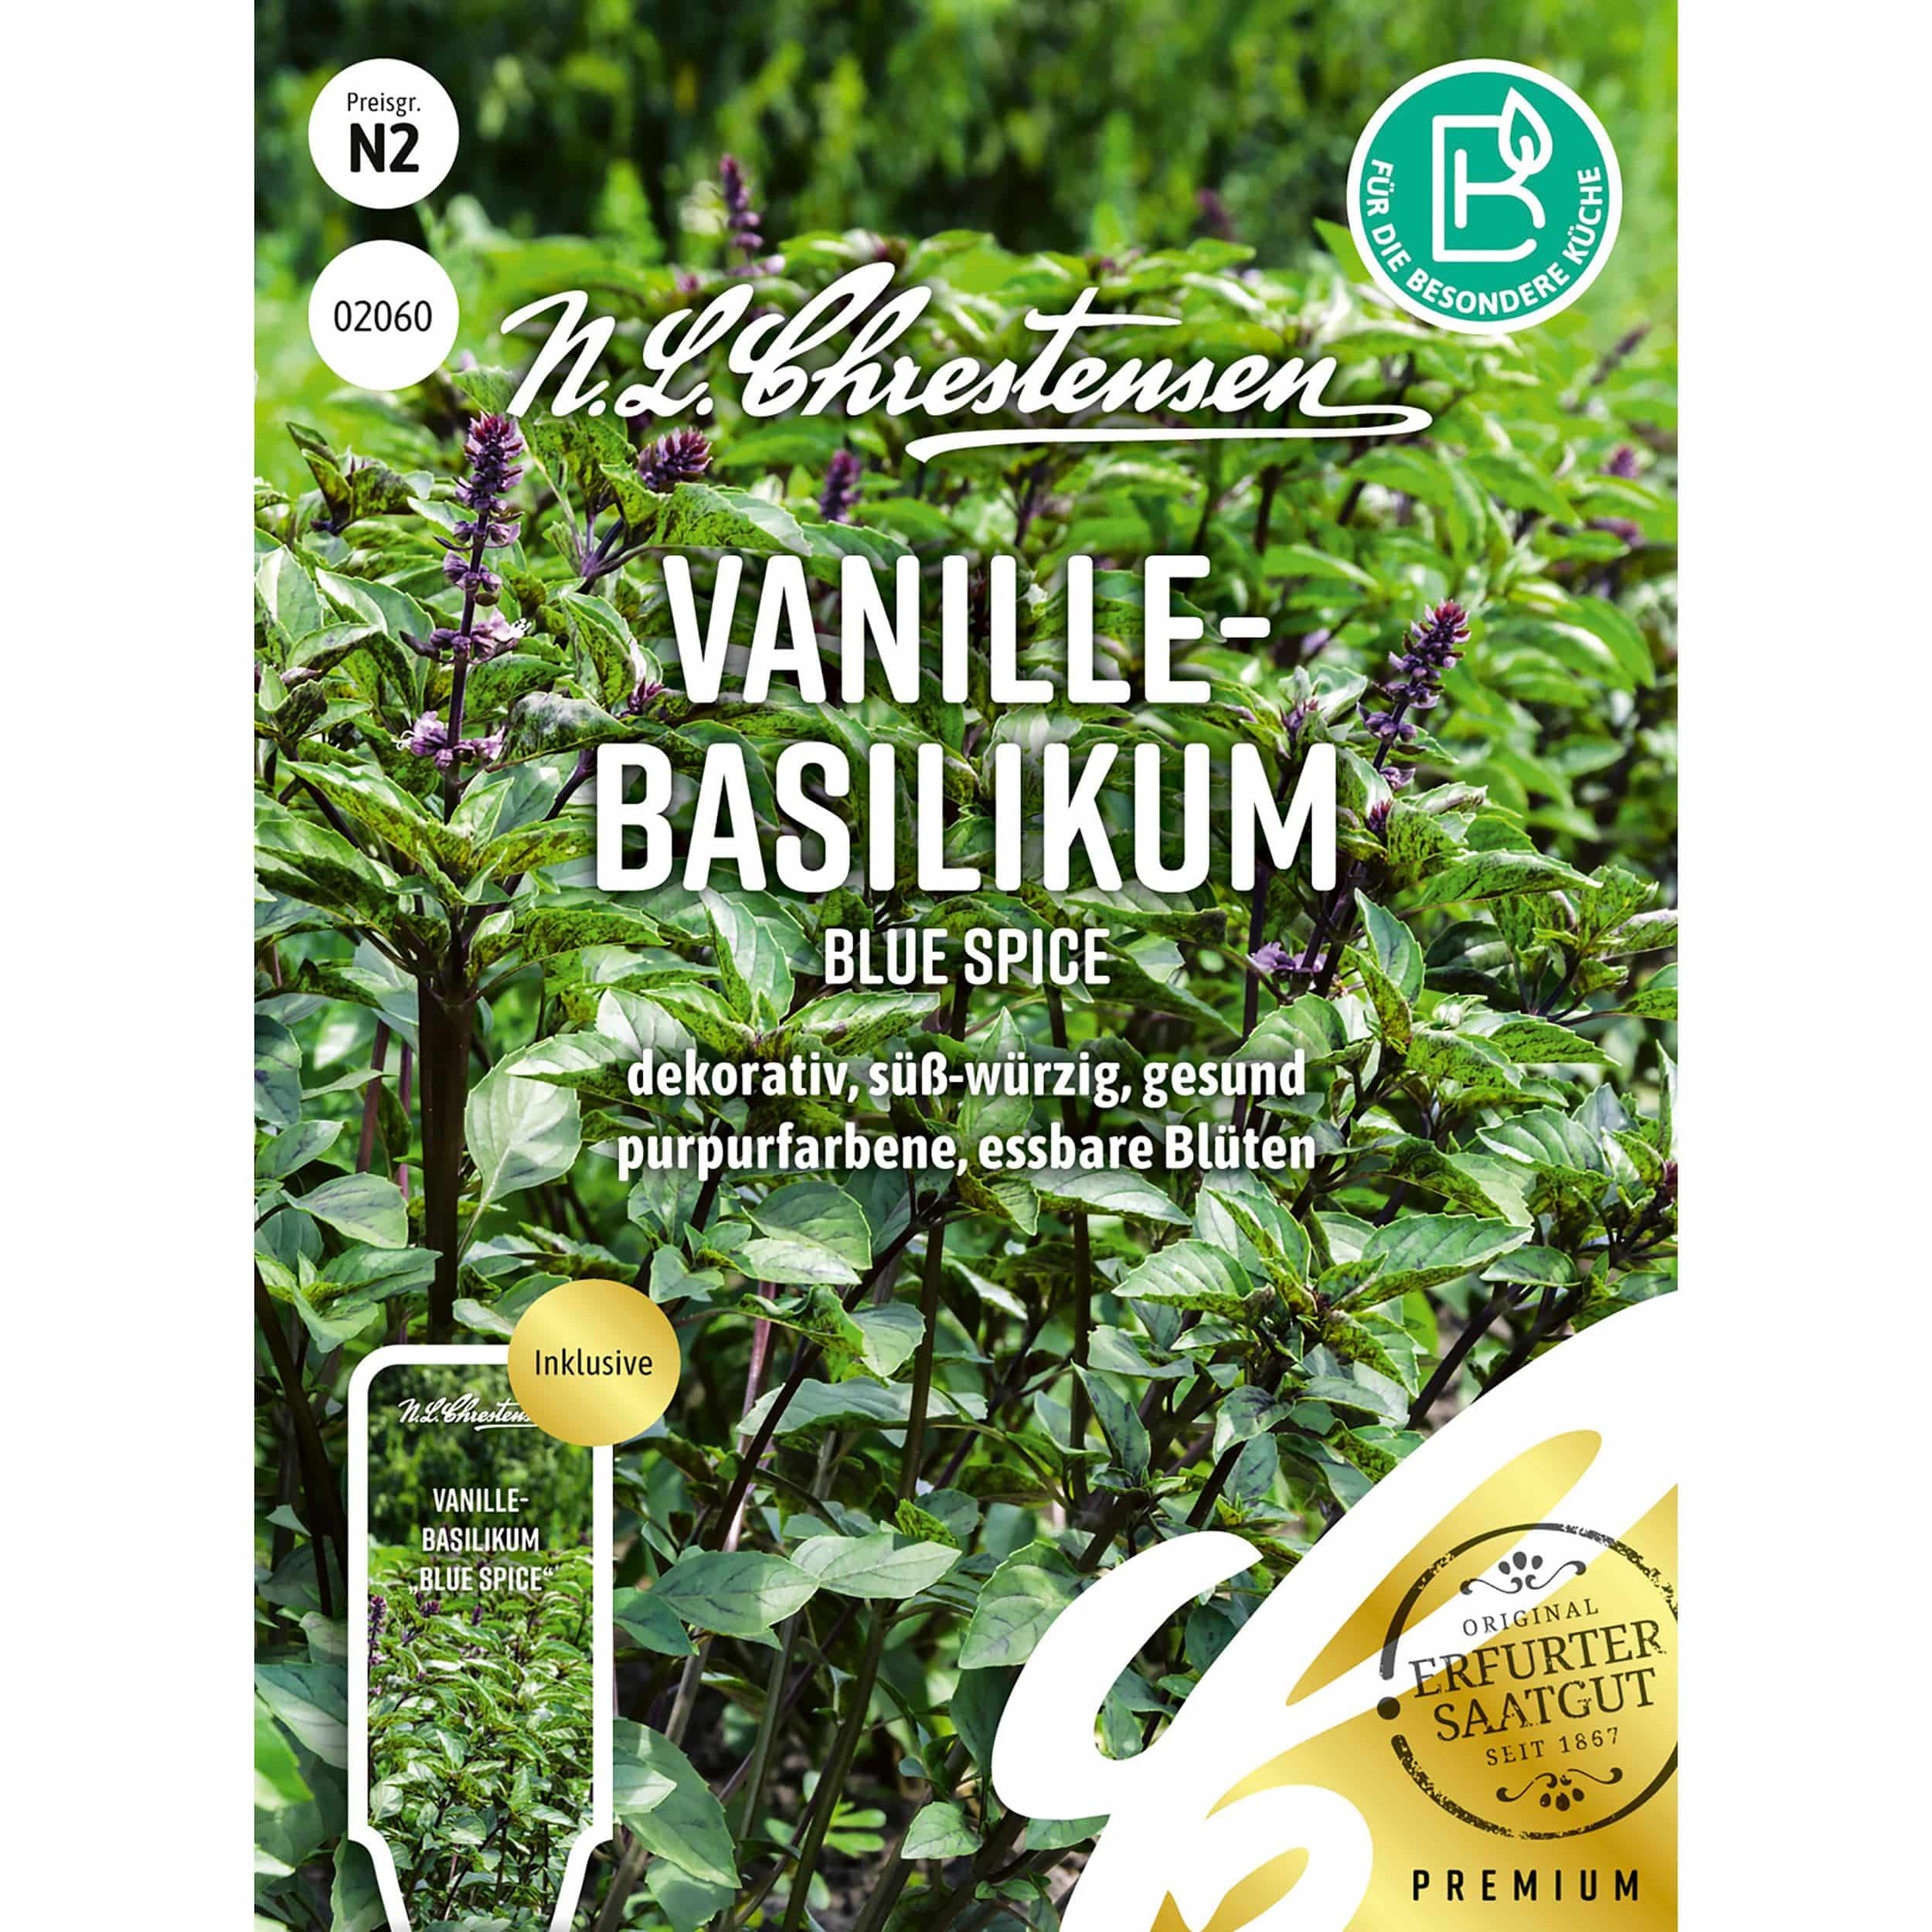 Vanille-
Basilikum Blue Spice